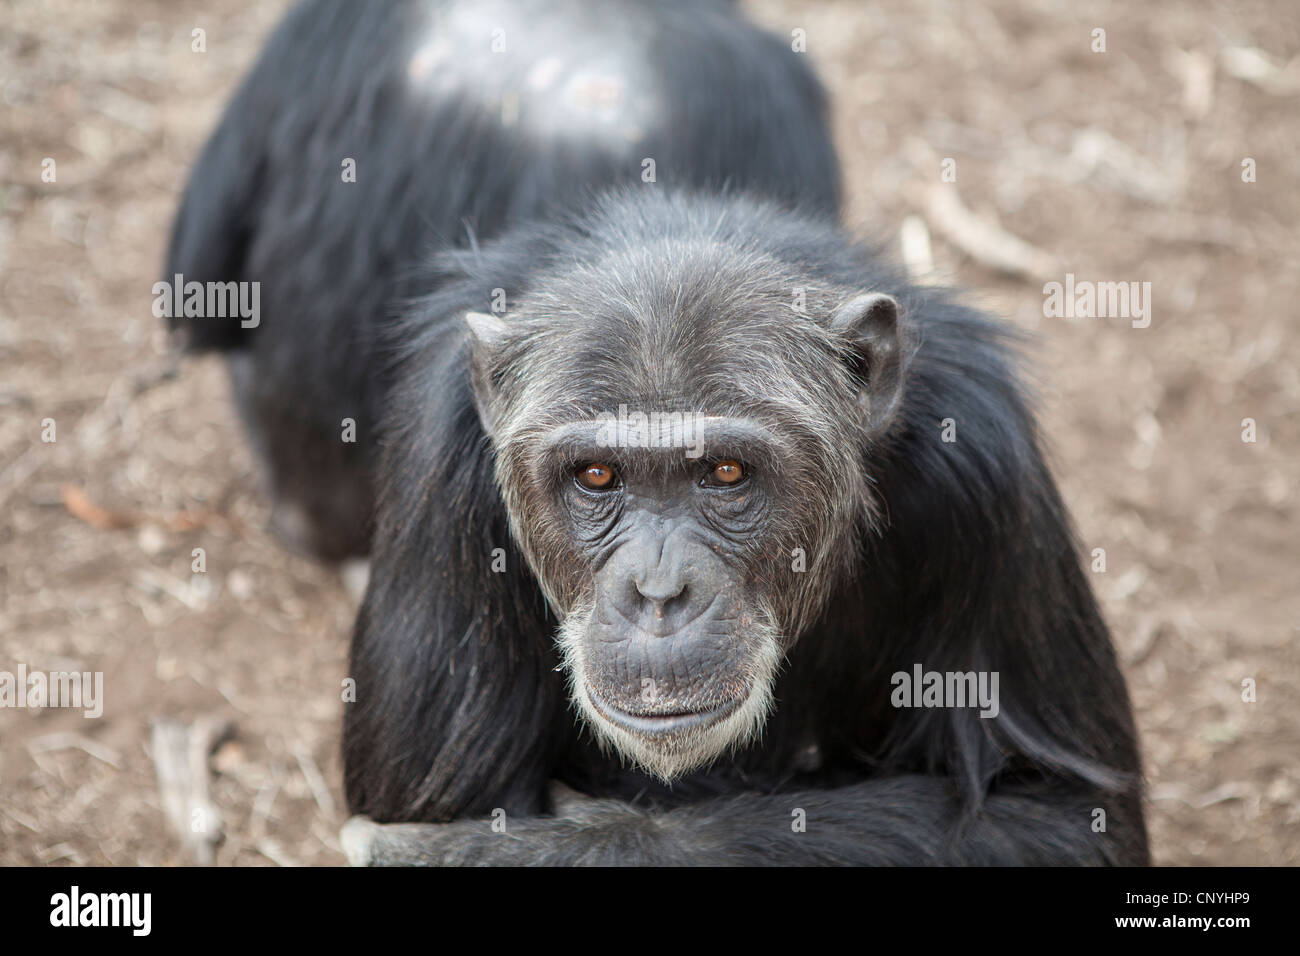 Old chimpanzee (chimp) in Kenya Stock Photo